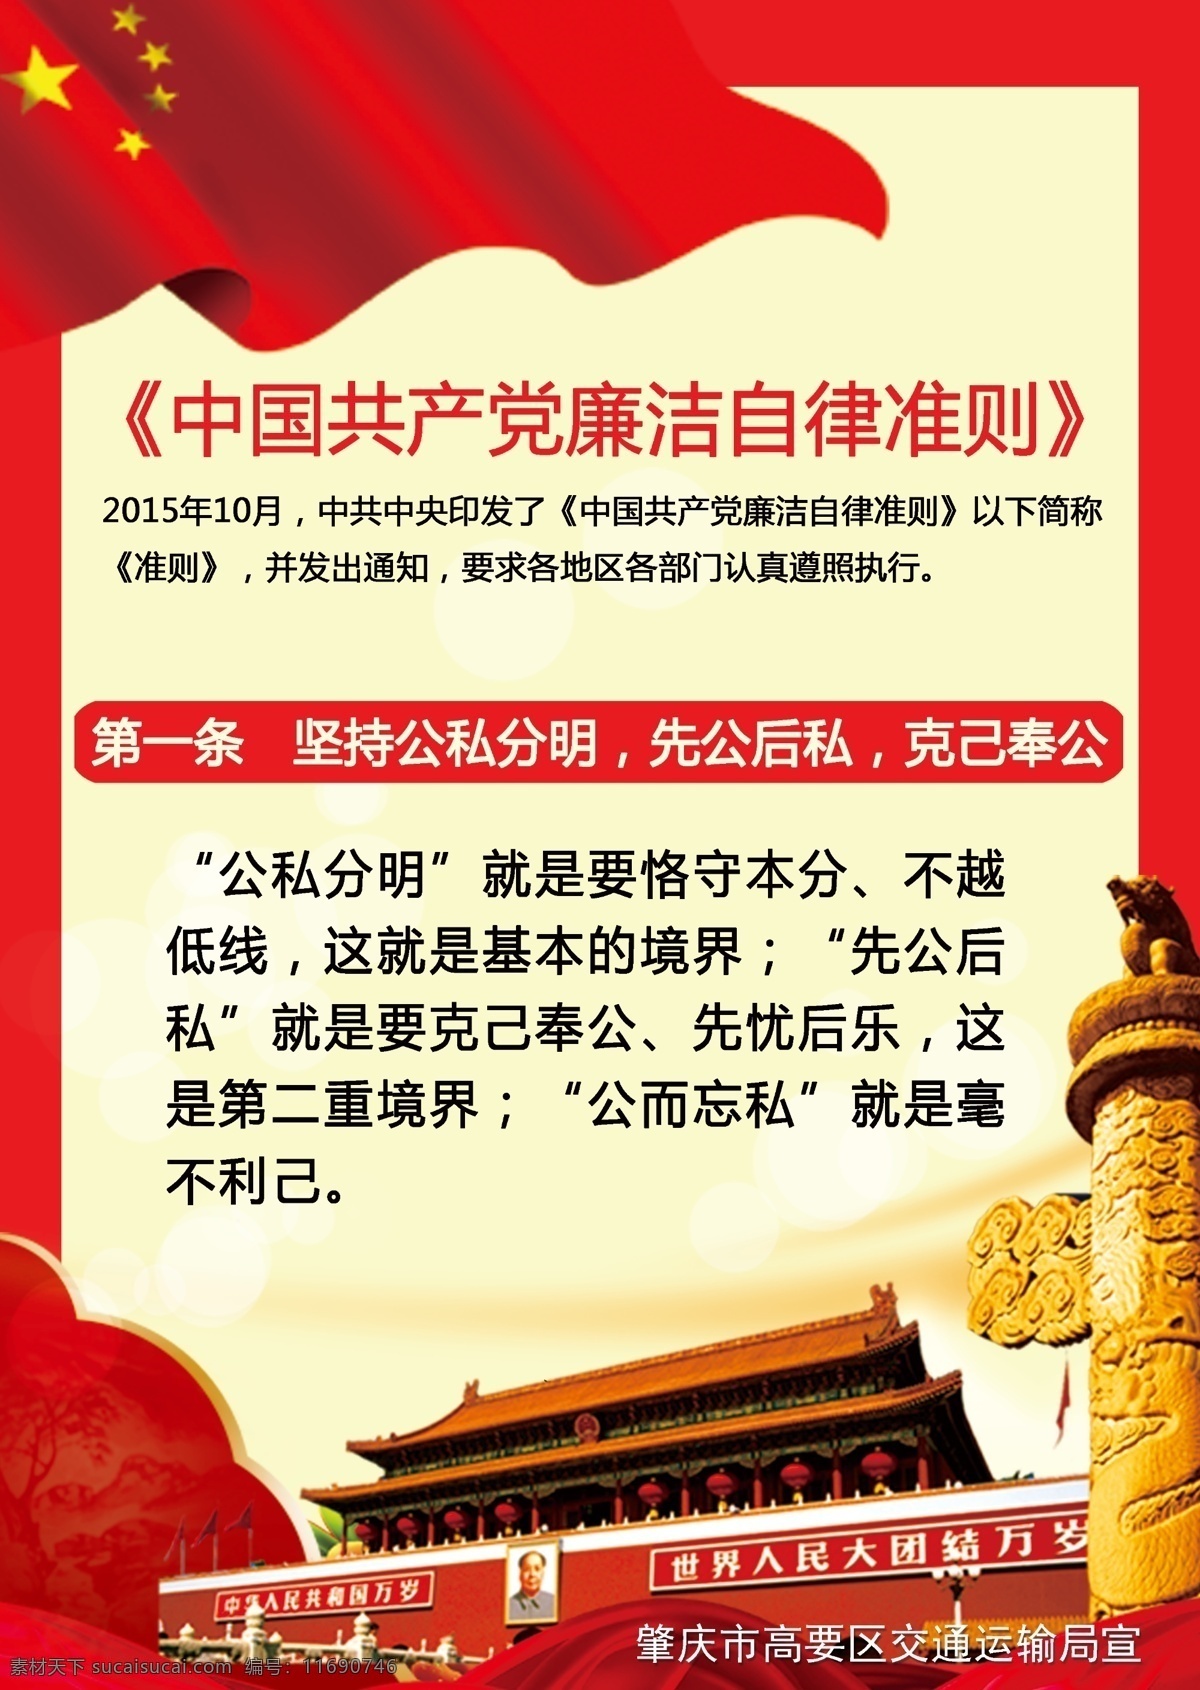 两会 中国共产党 廉洁自律 准则 红旗 天安门 红色背景 共产党的背景